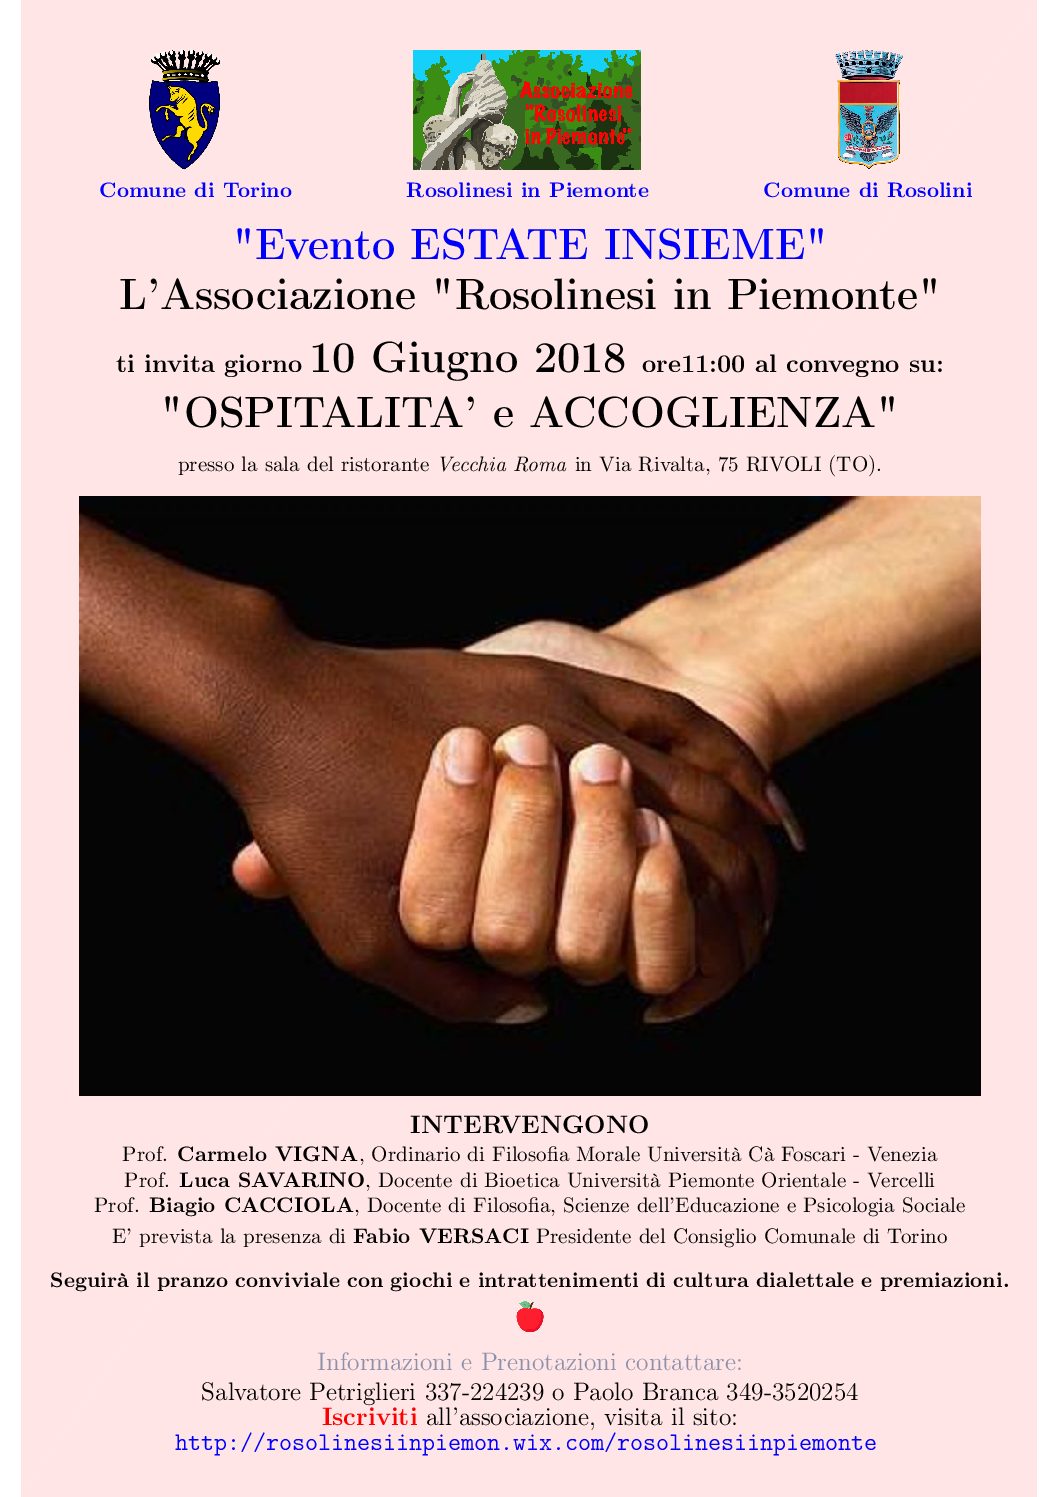 “Rosolinesi in Piemonte”, il 10 giugno il convegno “Ospitalità e Accoglienza”